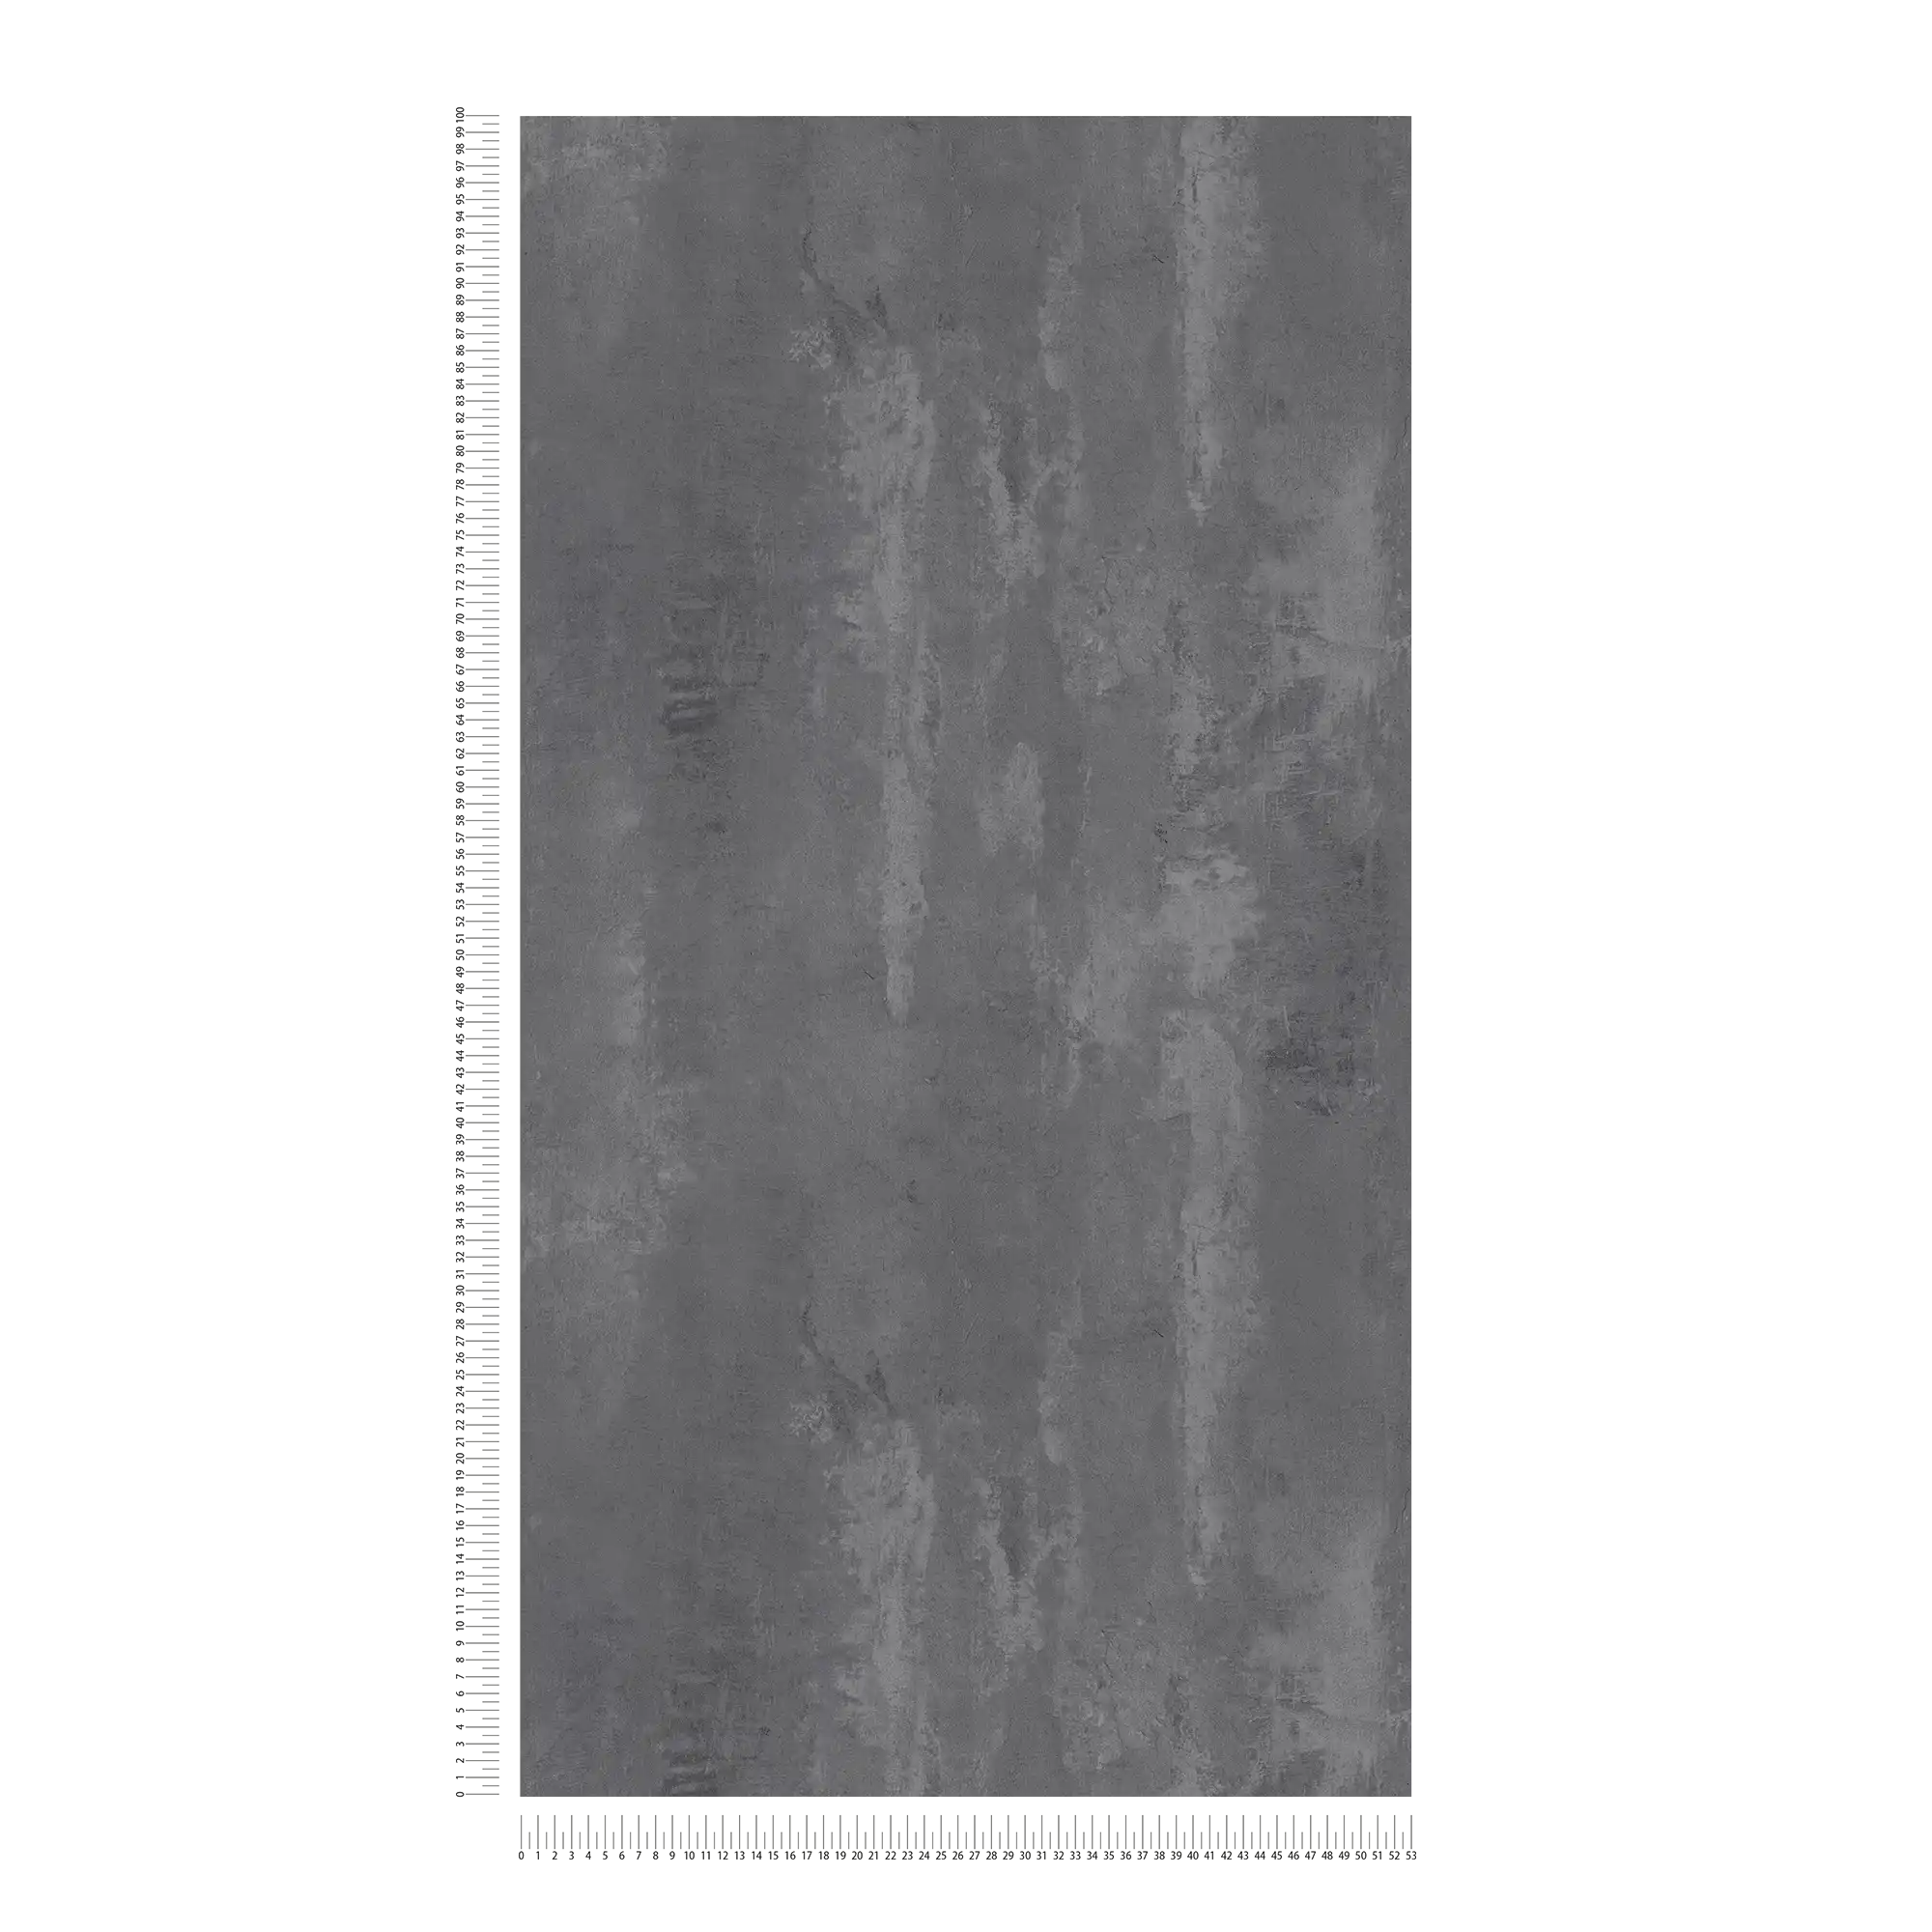             Donker betonbehang rustiek patroon & industriële stijl - grijs
        